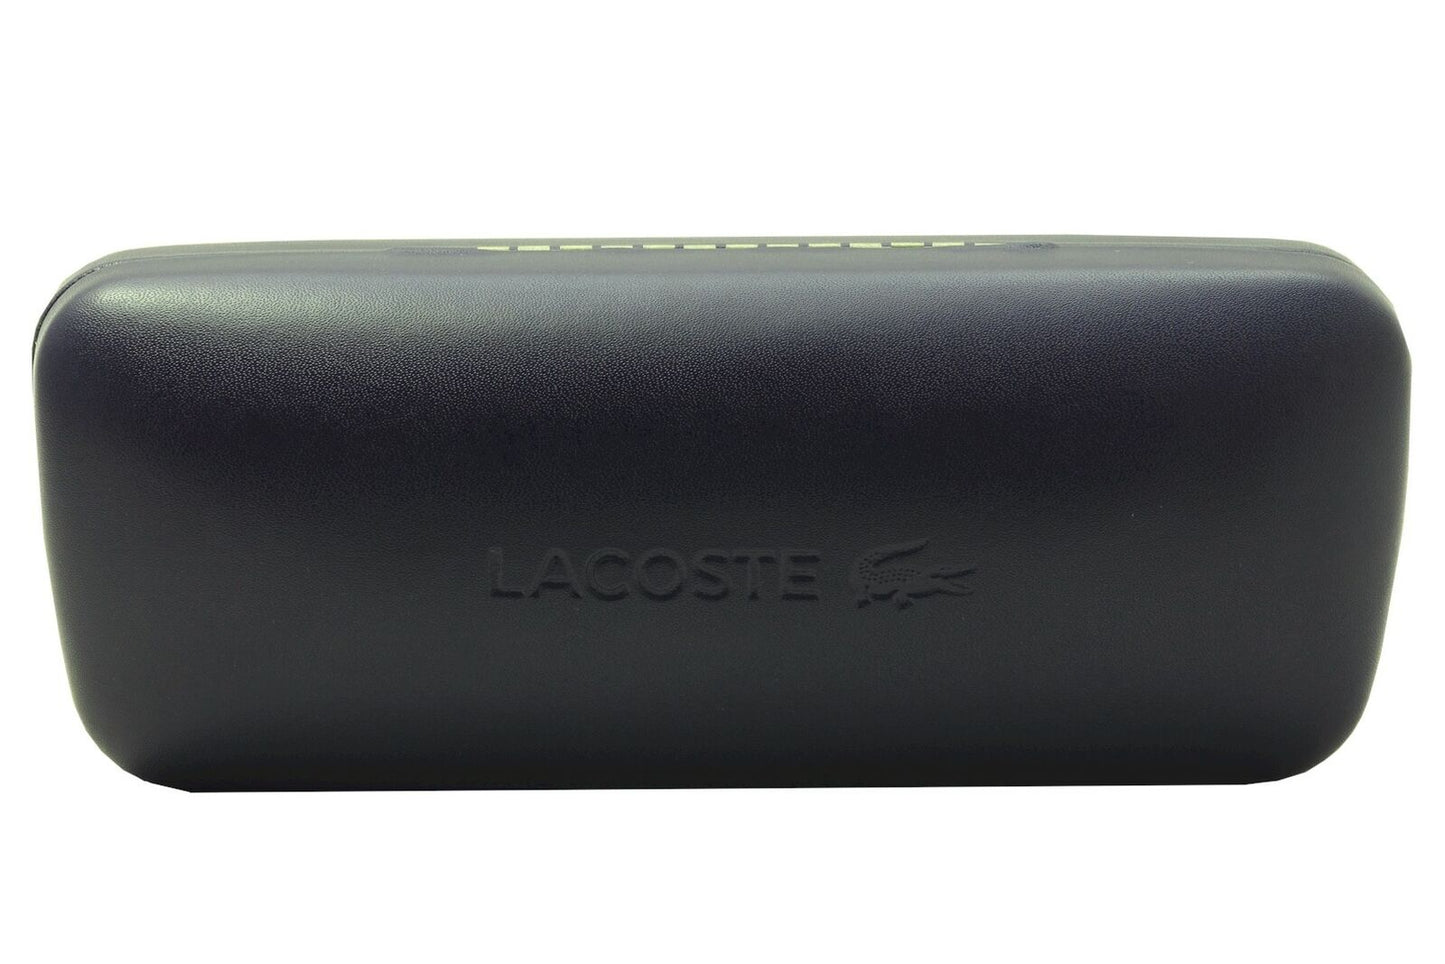 Lacoste L986S-410 52mm New Sunglasses